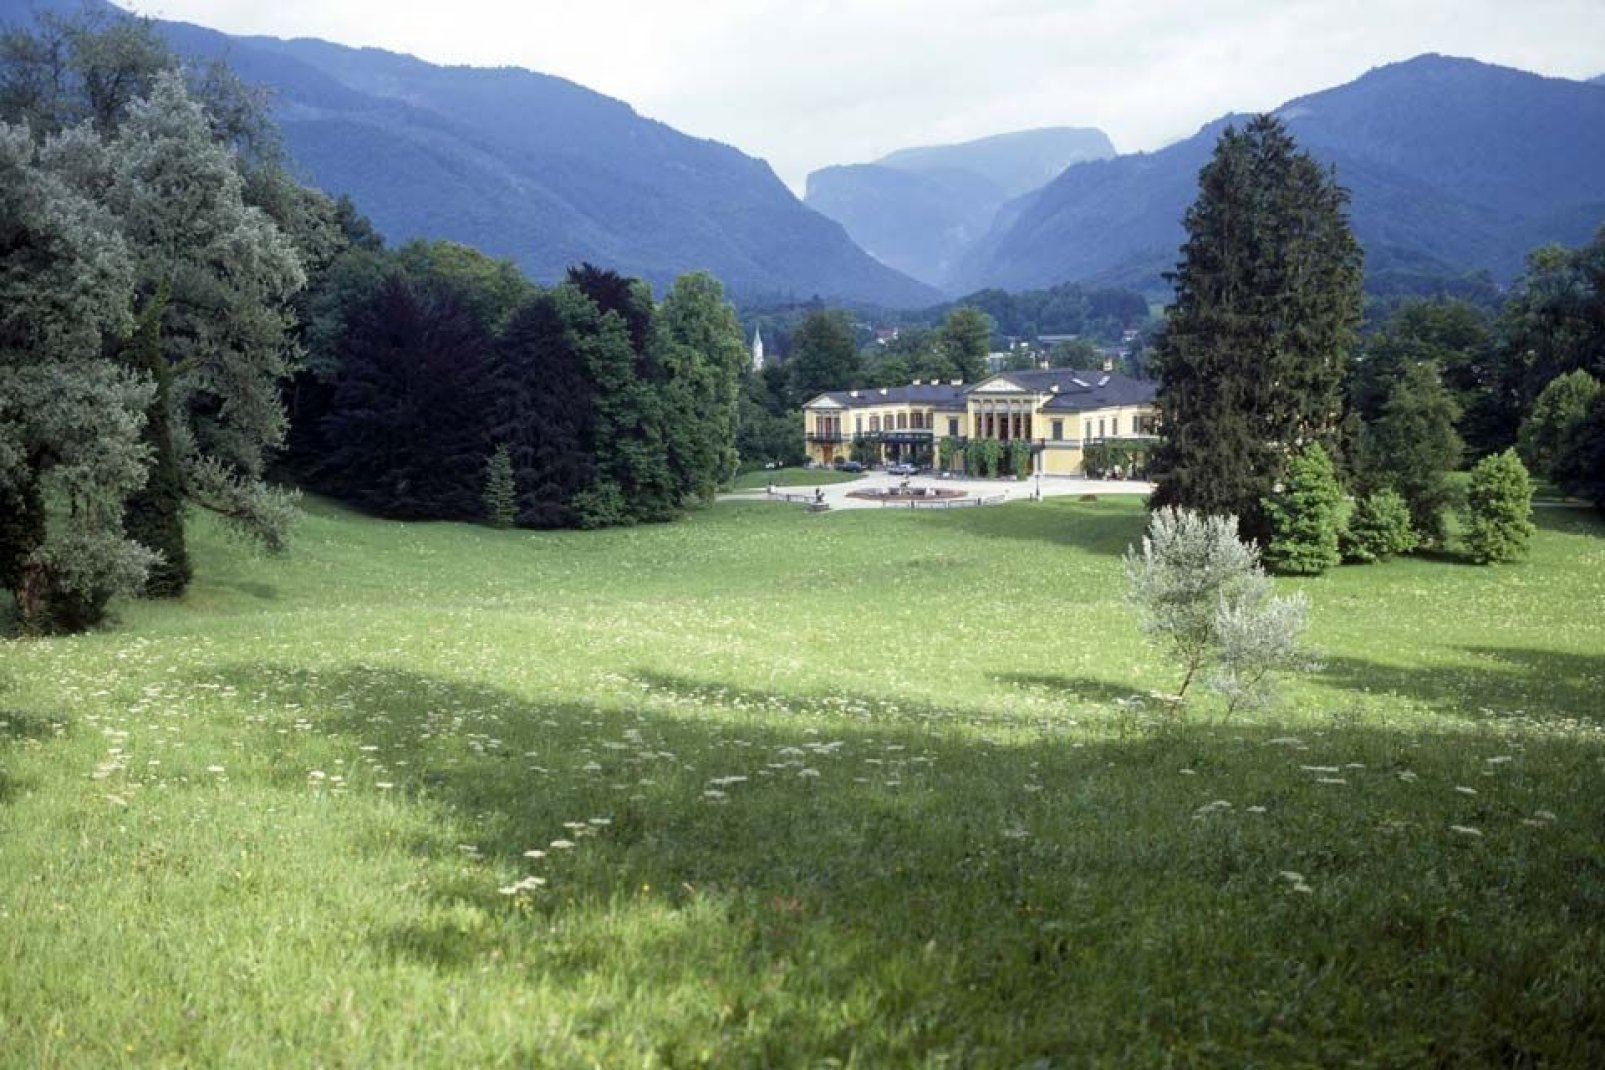 Die Villa im neoklassischen Stil war einst die Residenz des Kaisers Franz-Joseph und seiner Gemahlin Elisabeth von Österreich.